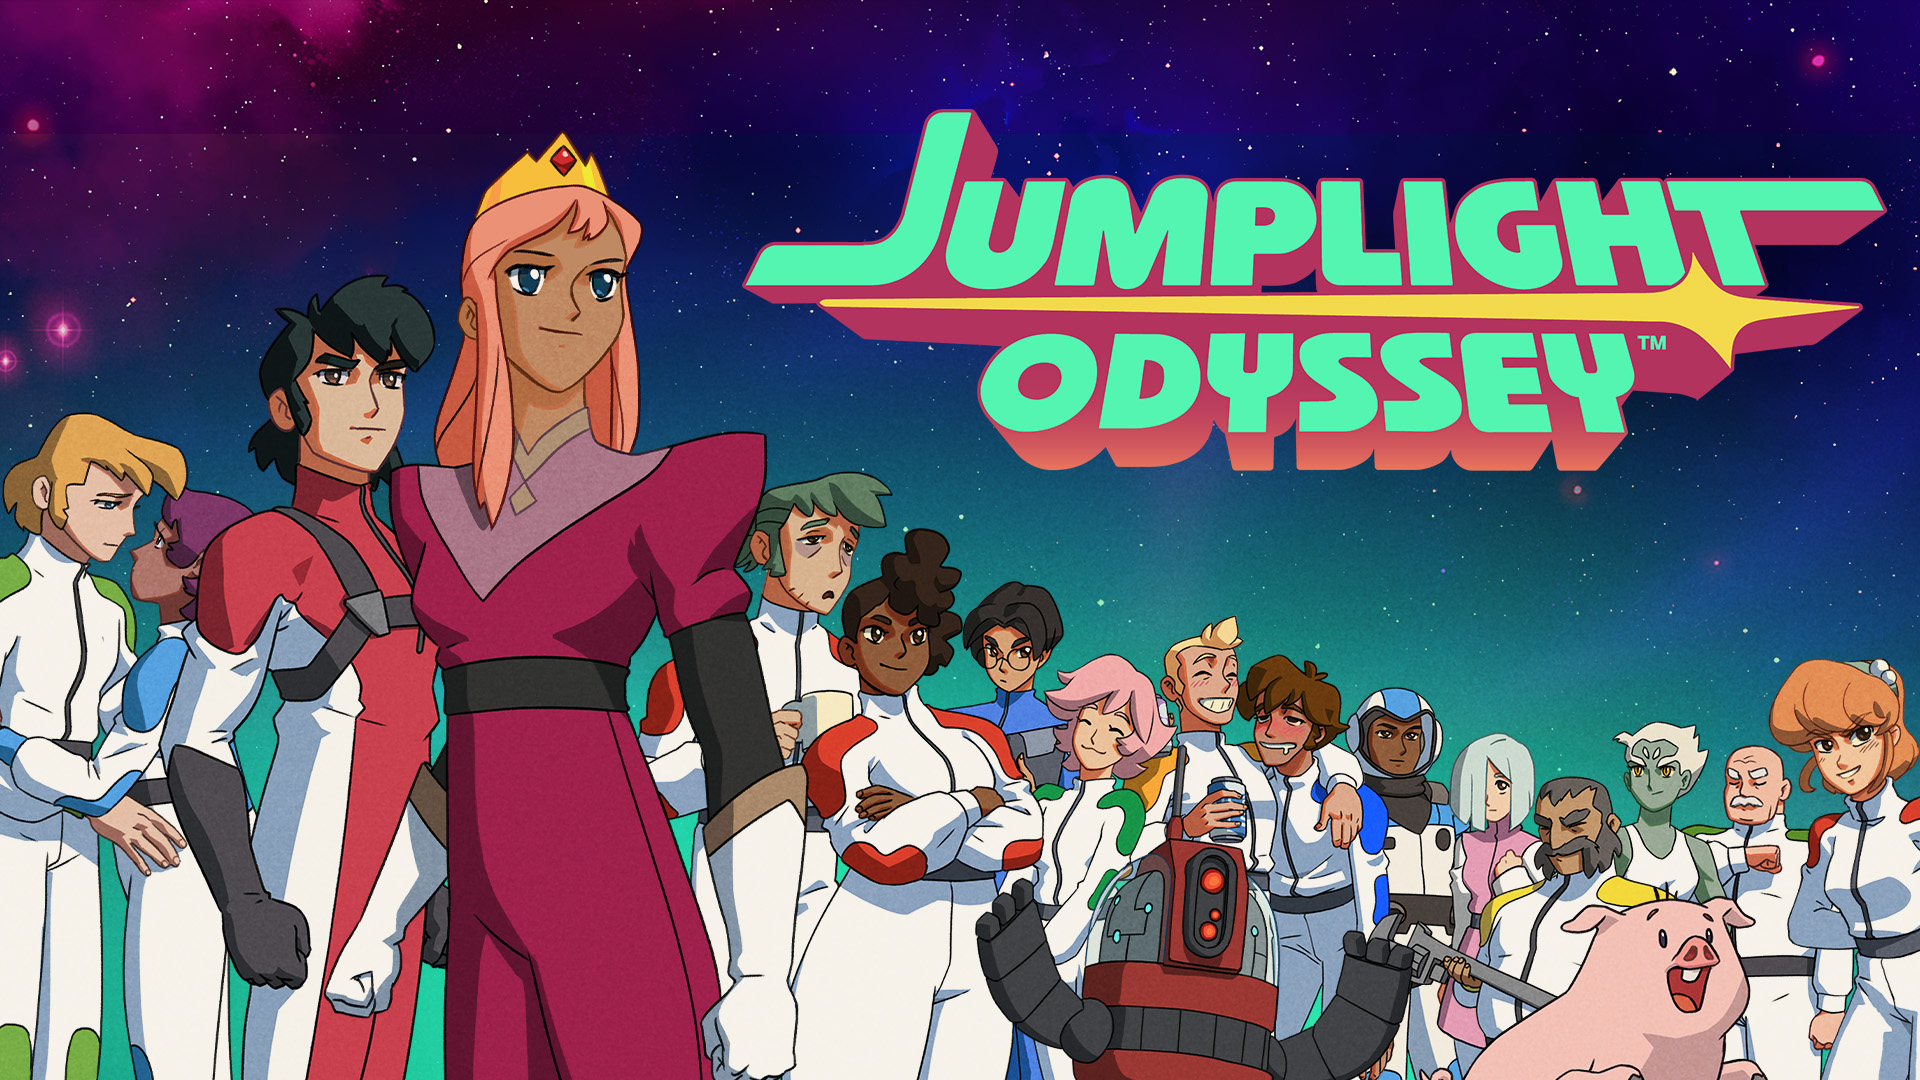 #Jumplight Odyssey beginnt seine galaktische Reise durch Sci-Fi-Animes der 70er-Jahre